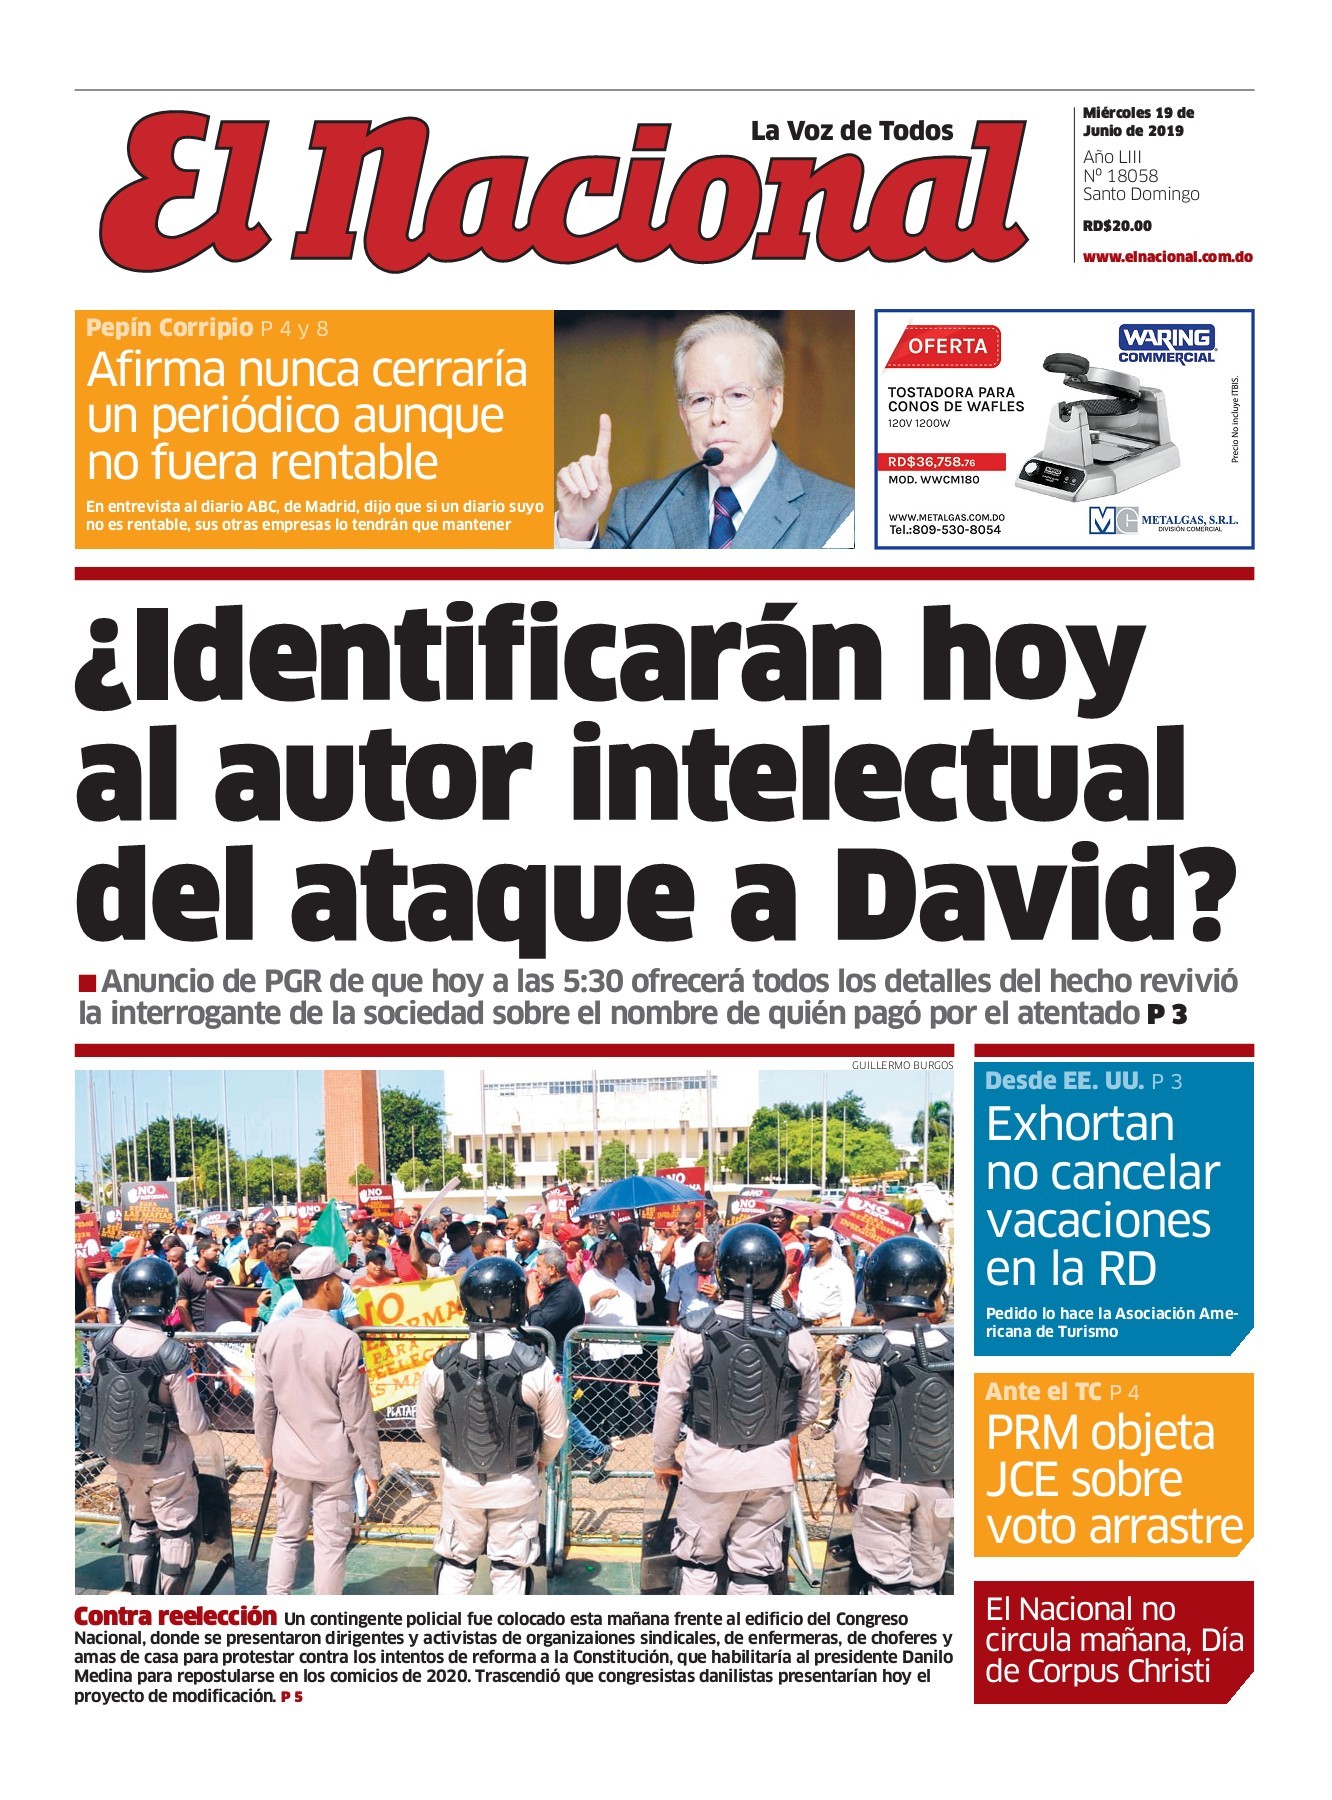 Portada Periódico El Nacional, Miércoles 19 Junio 2019